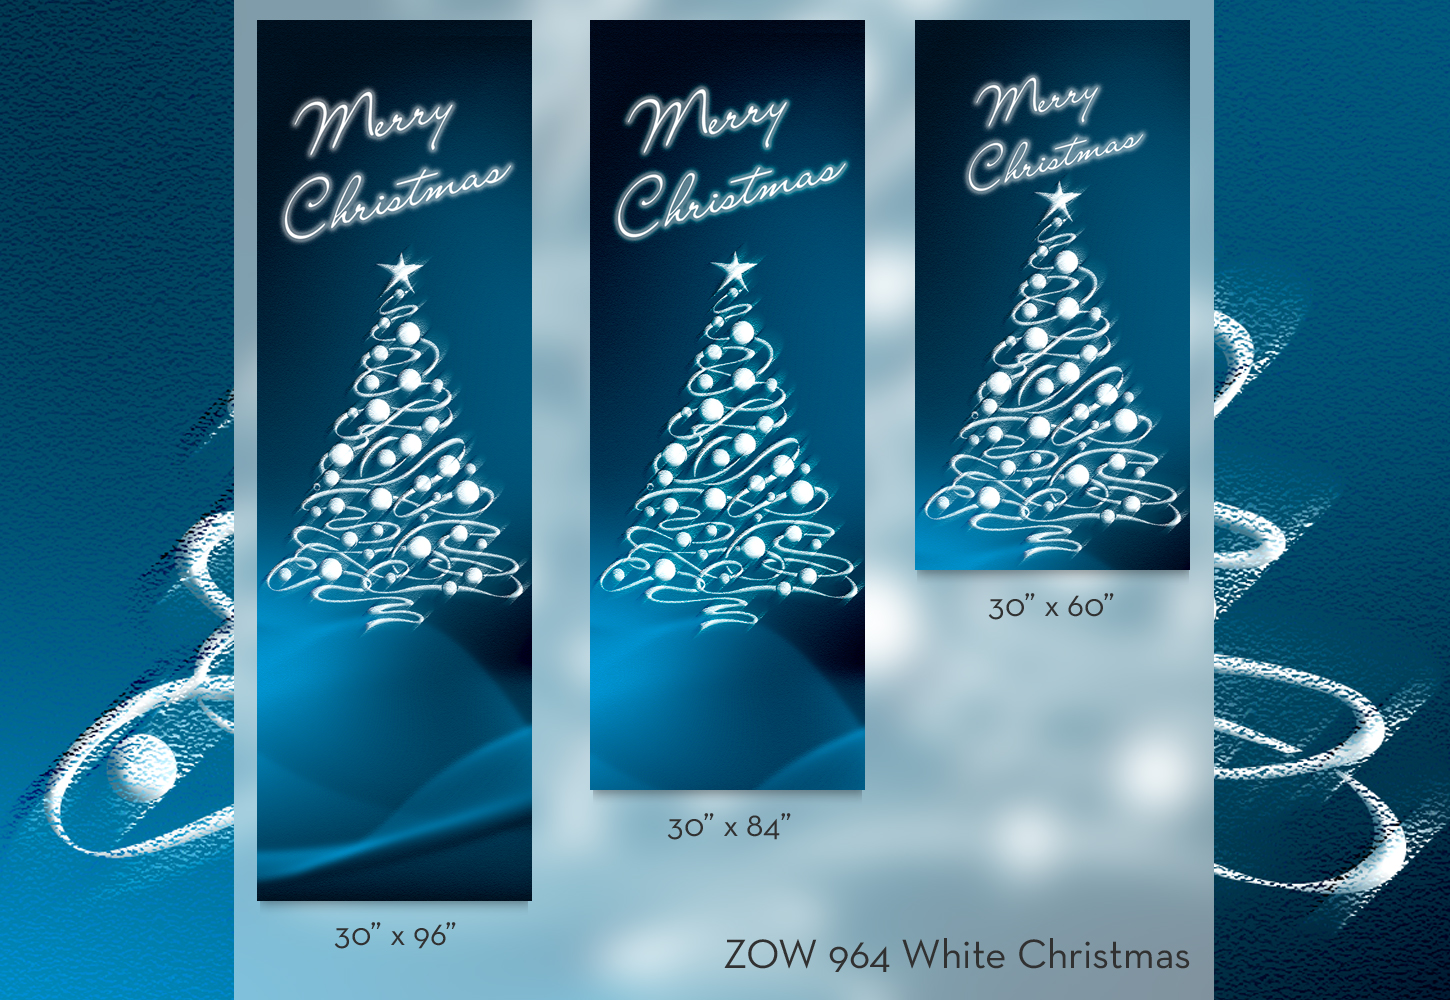 ZOW 964 White Christmas